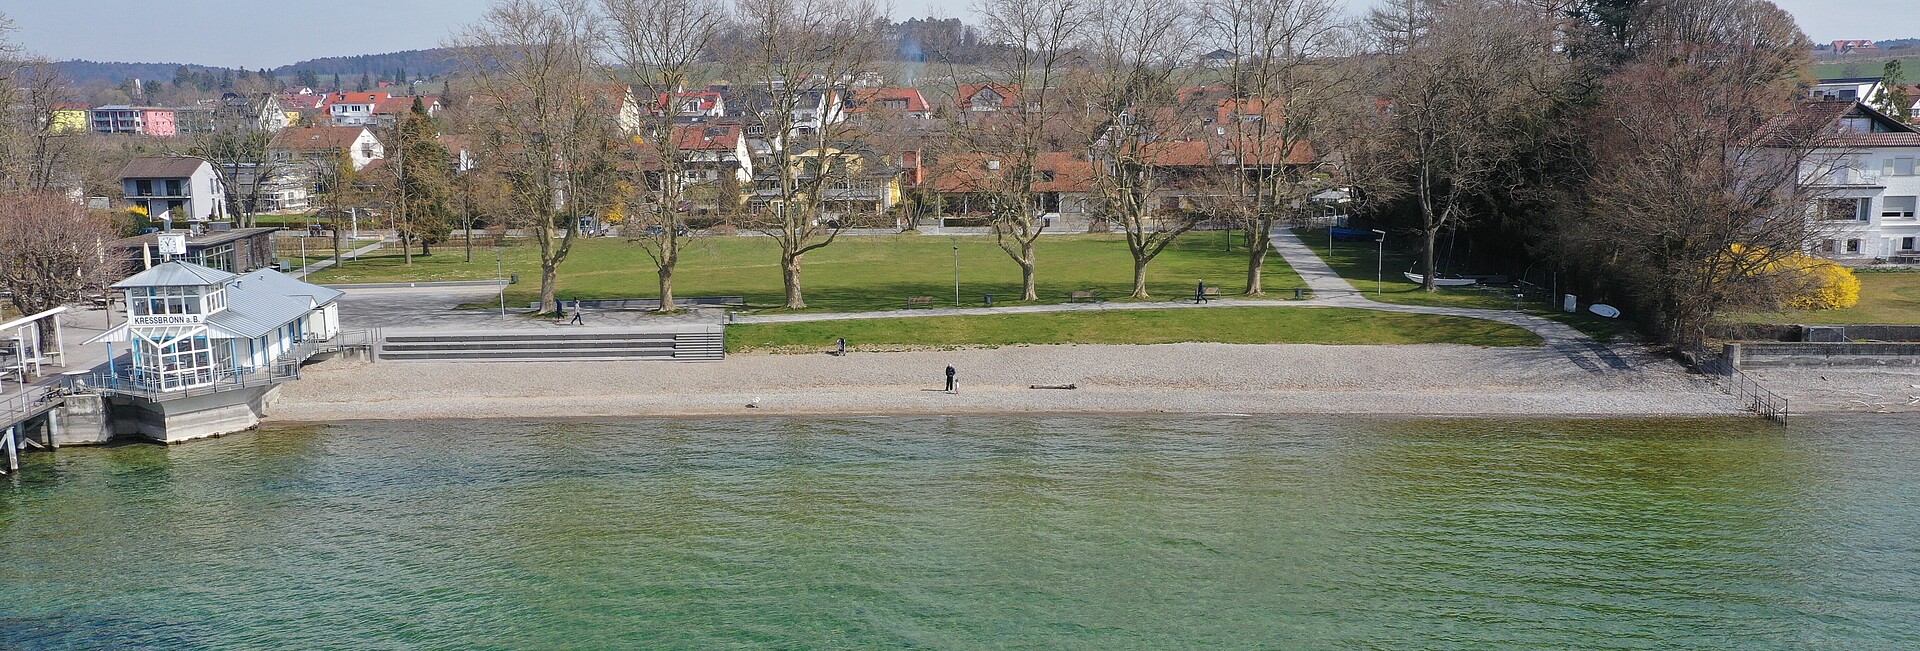 Uferrenaturierung Kressbronn - Blick aus def Höhe auf das Ufer